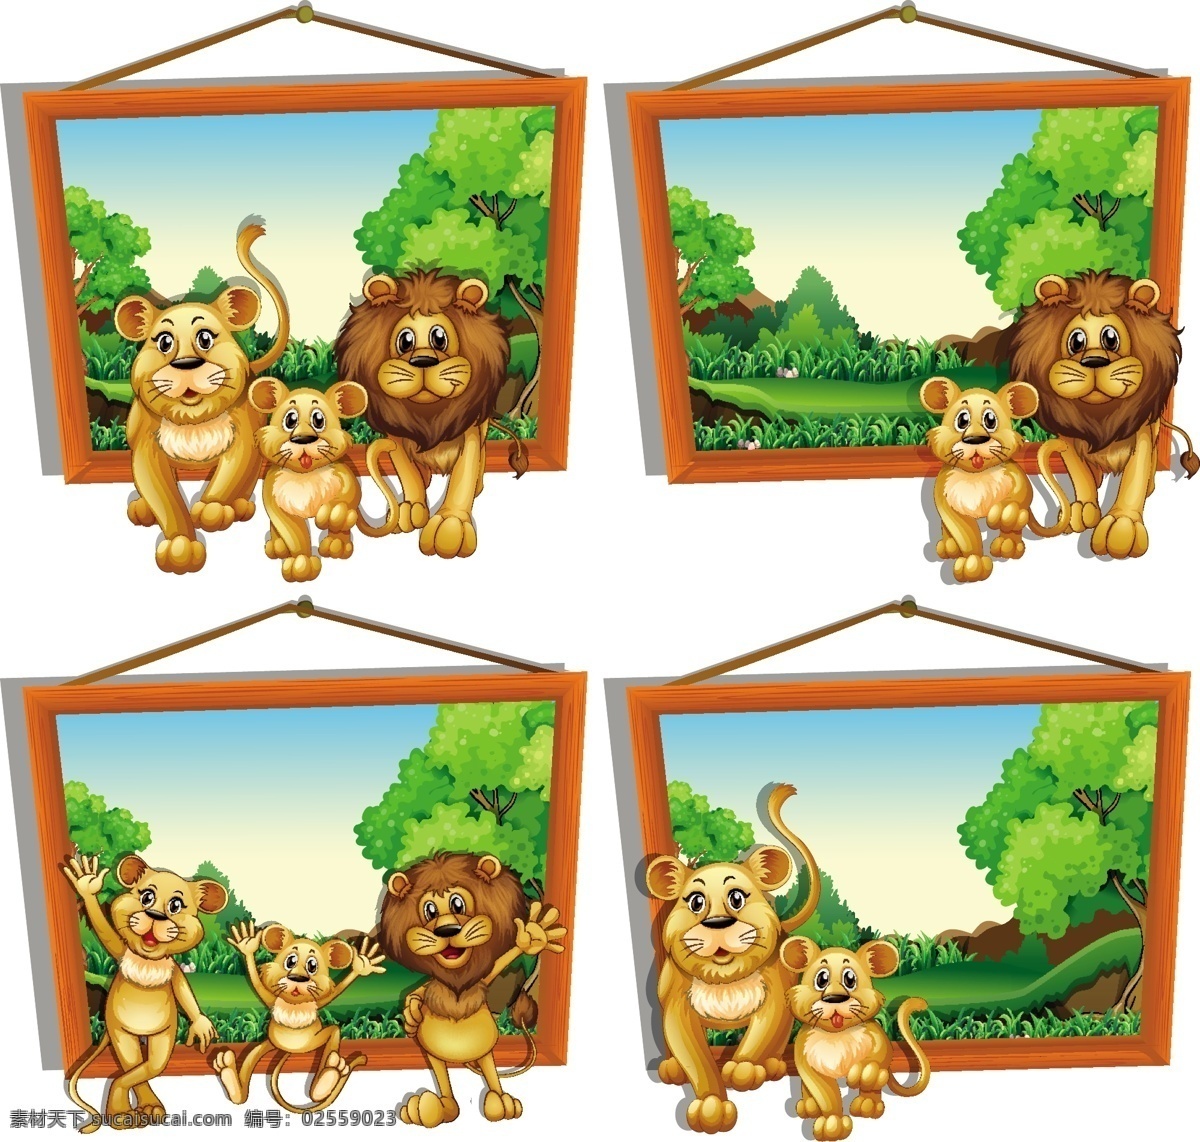 卡通狮子 动物插画 头像 表情 野生动物 手绘动物 动物 素描 手绘 卡通动物园 动物园 卡通 可爱动物 小动物 生物世界